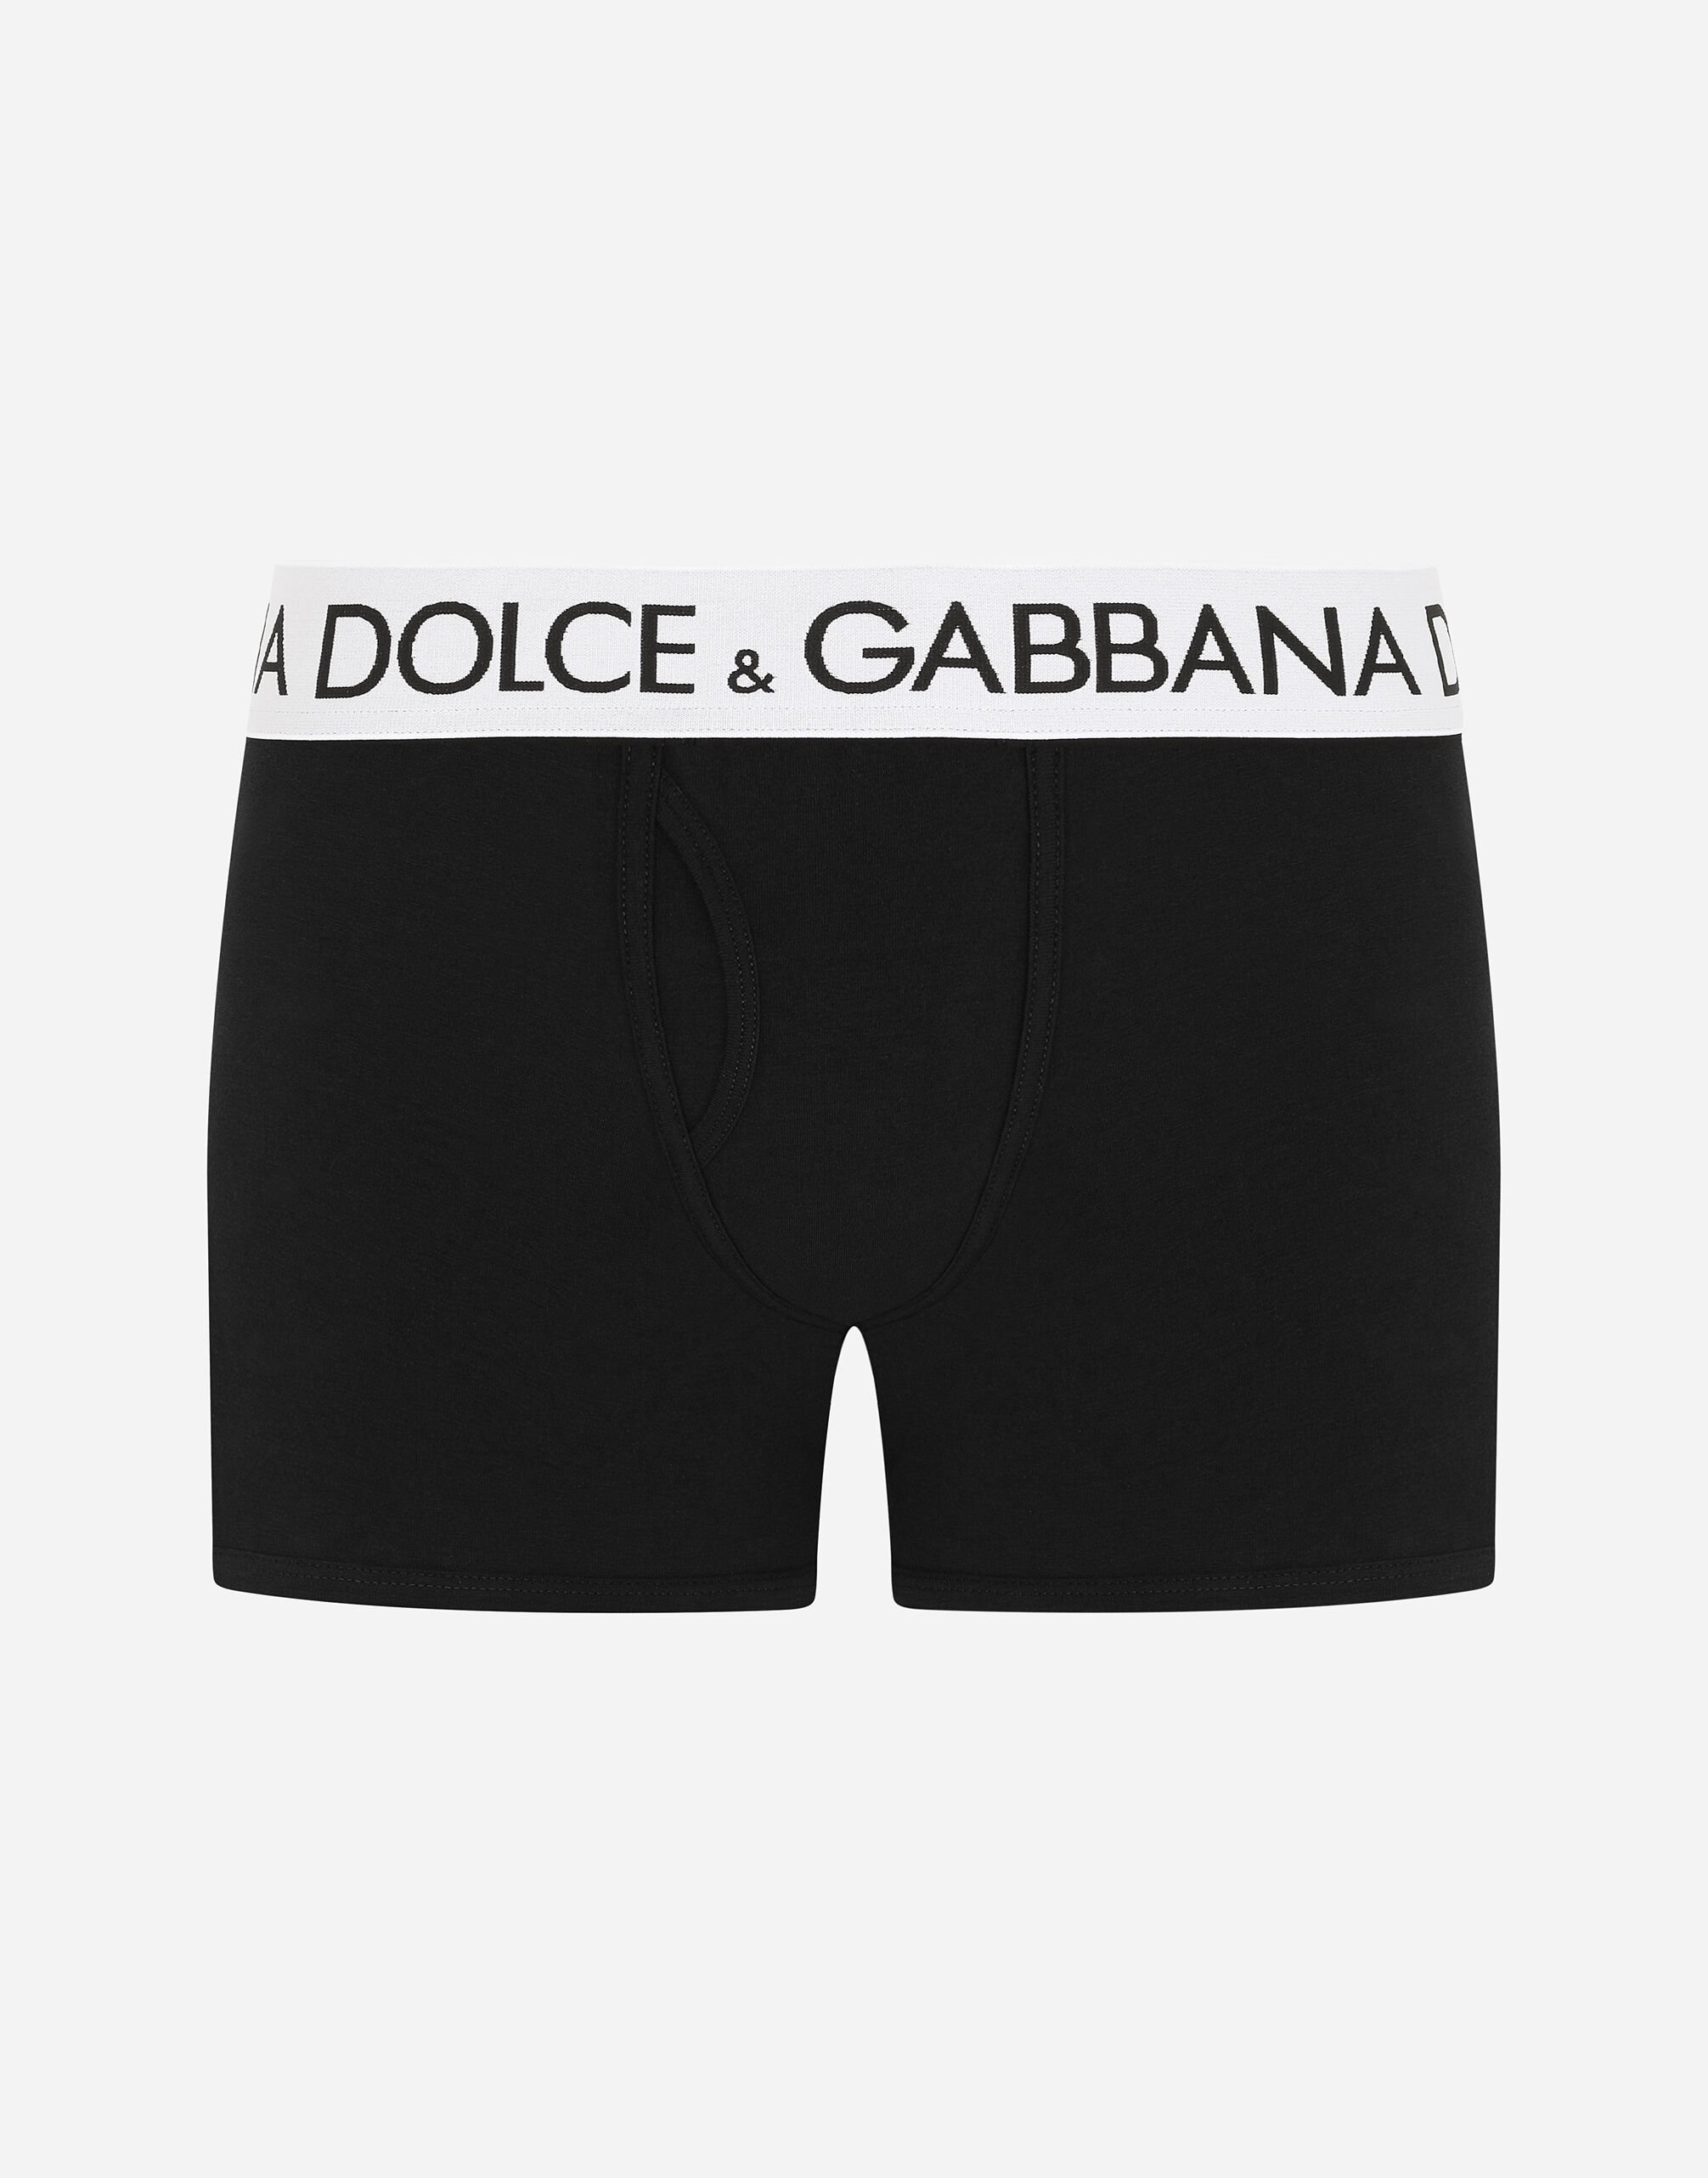 Dolce & Gabbana Two-way-stretch cotton jersey long-leg boxers Black M9C03JONN95